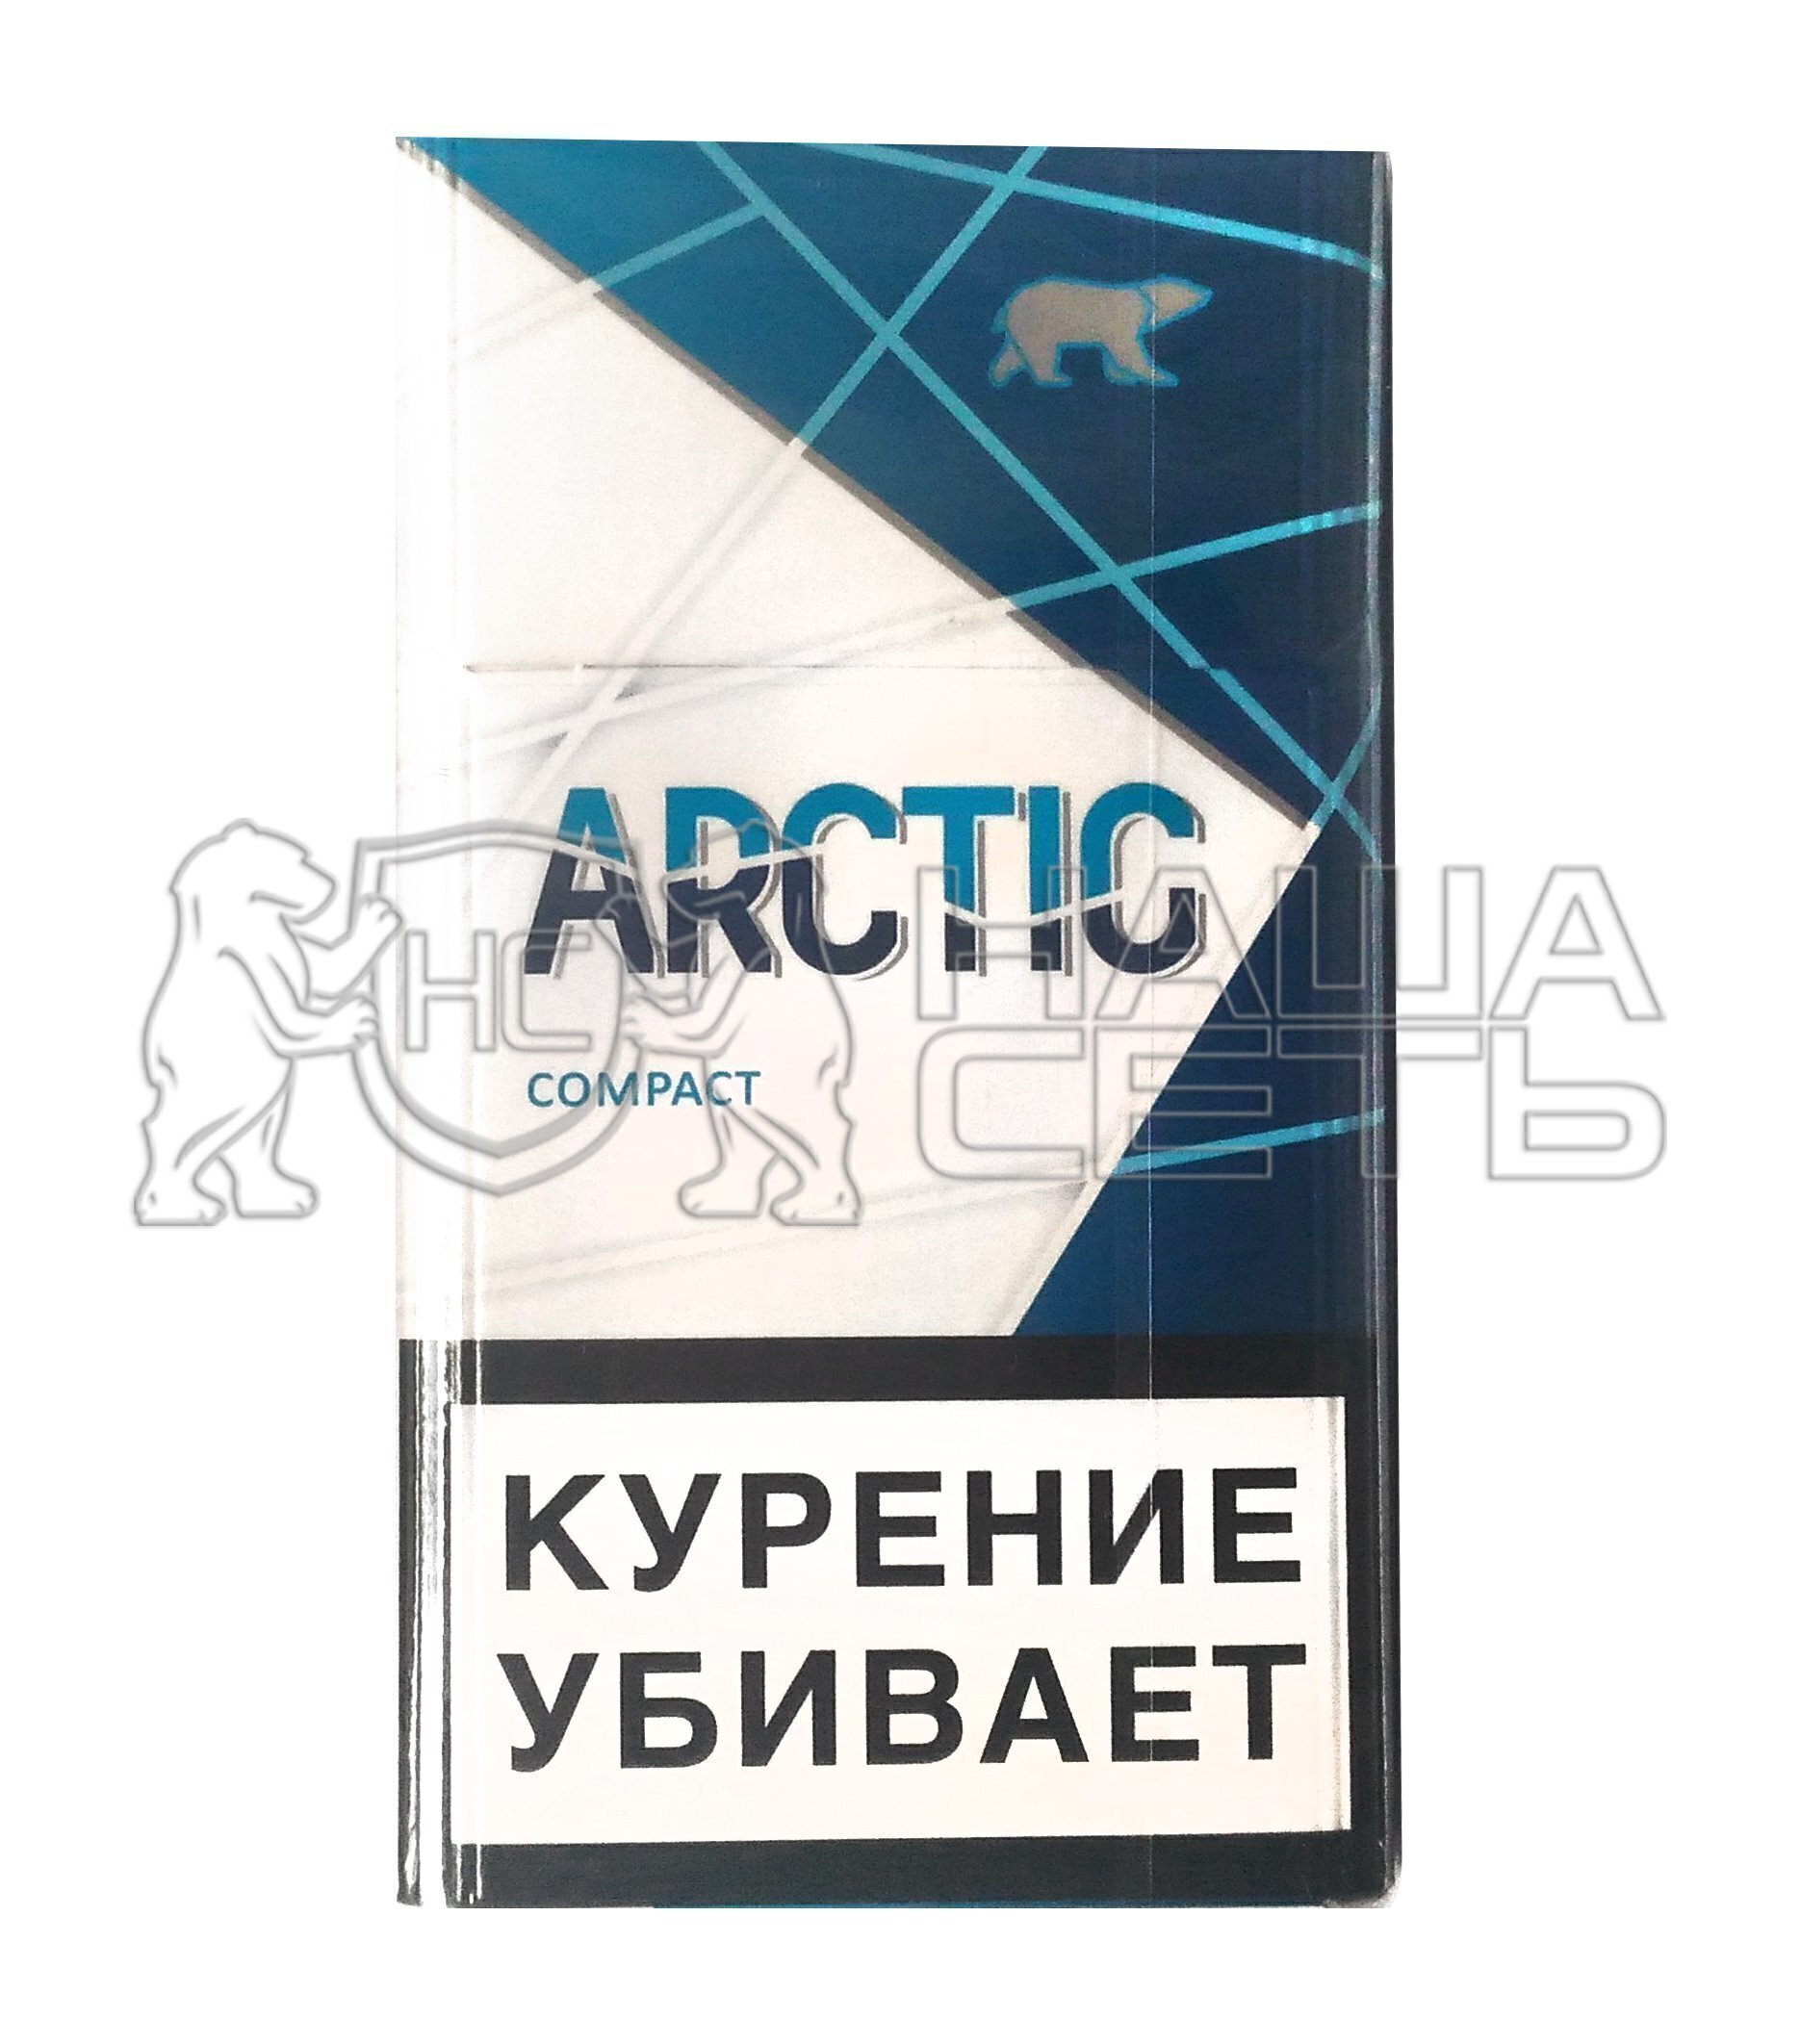 Сигареты Арктика